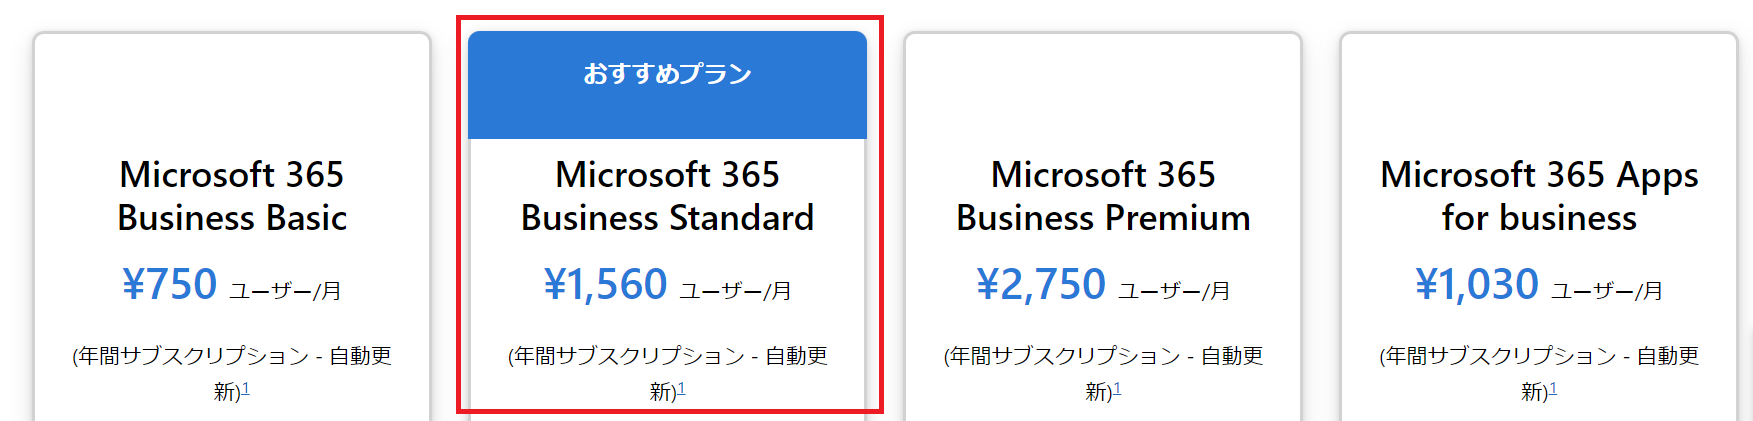 Microsoft365 Business Standard:おすすめのプラン